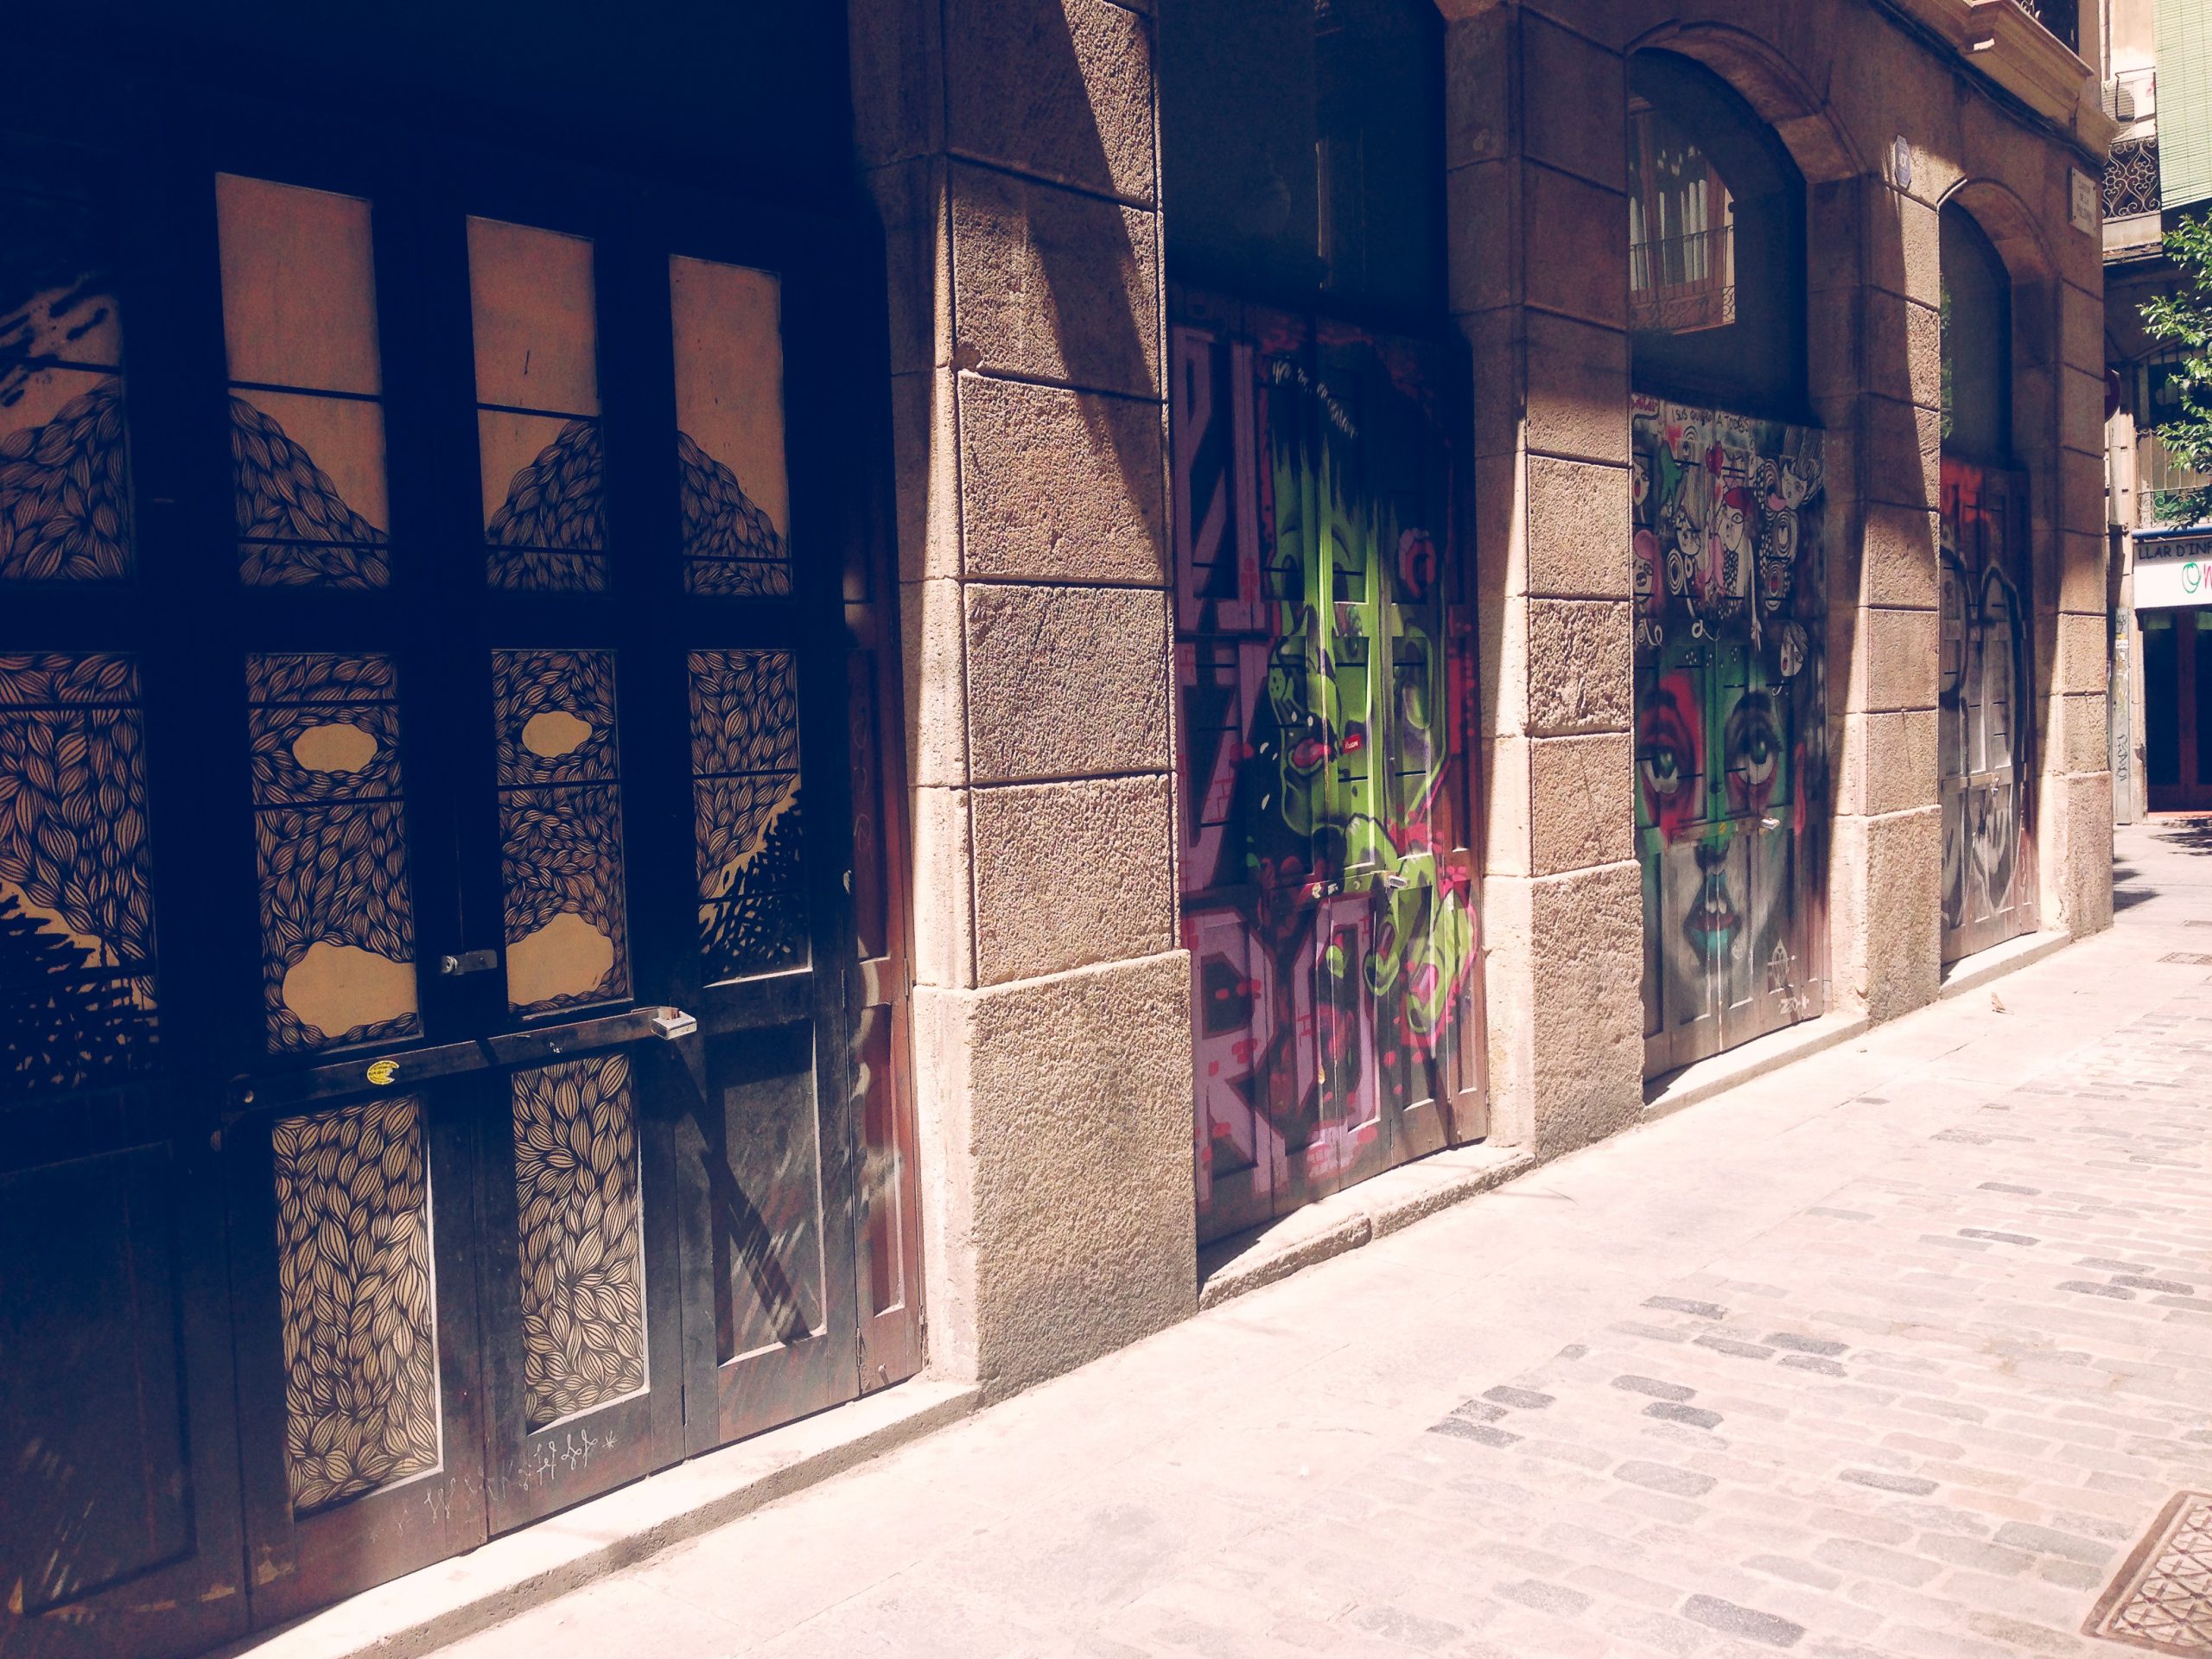 Street art in Barcelona